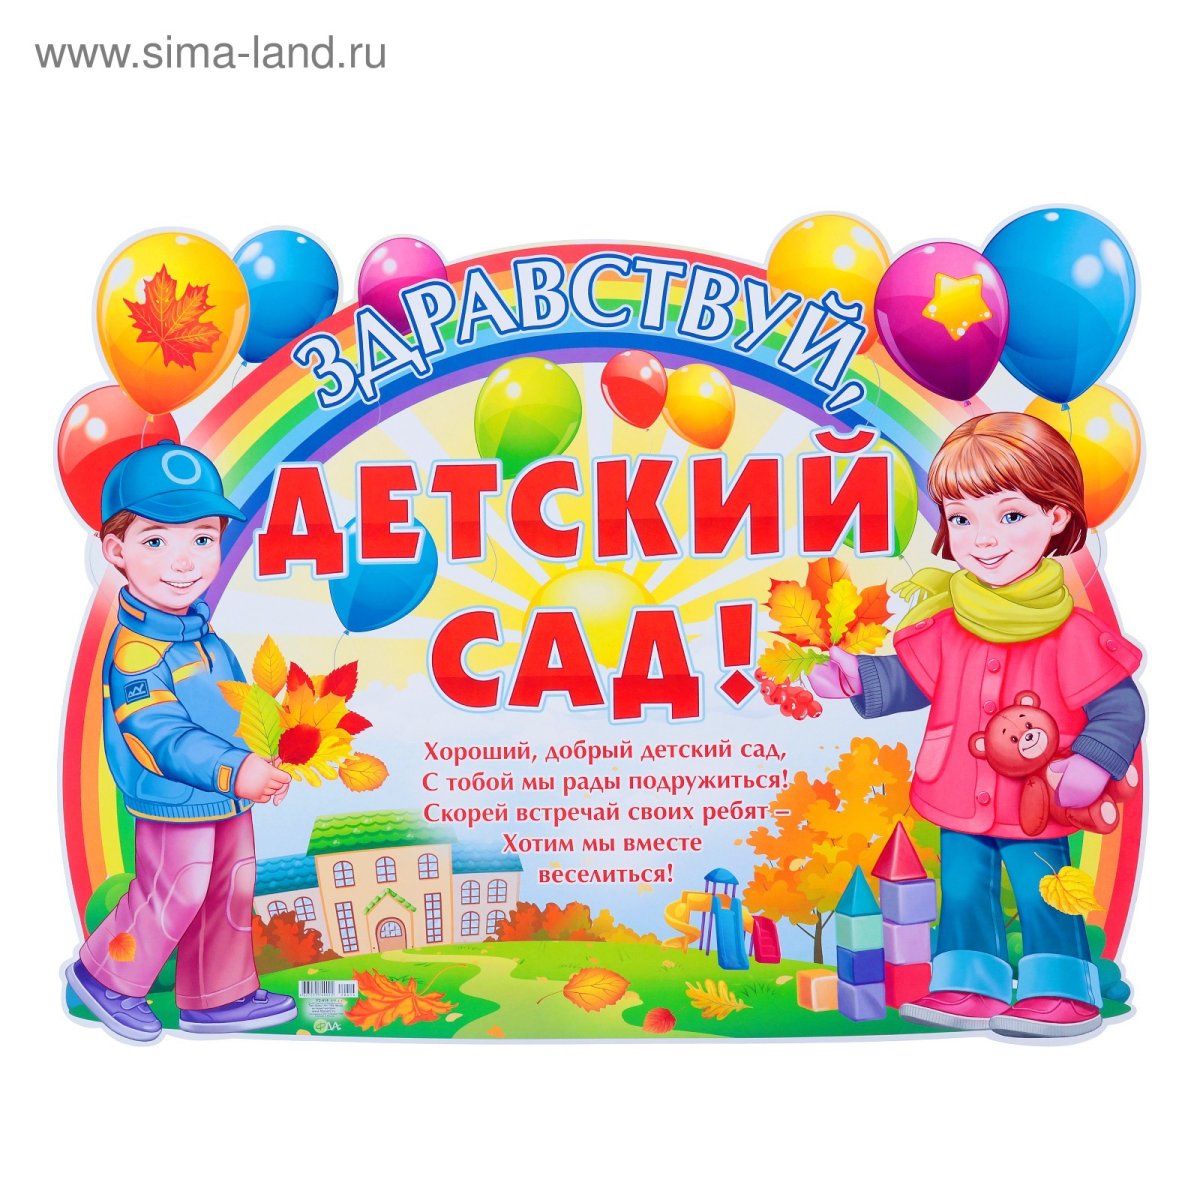 С днем рождения садик - фото и картинки aikimaster.ru